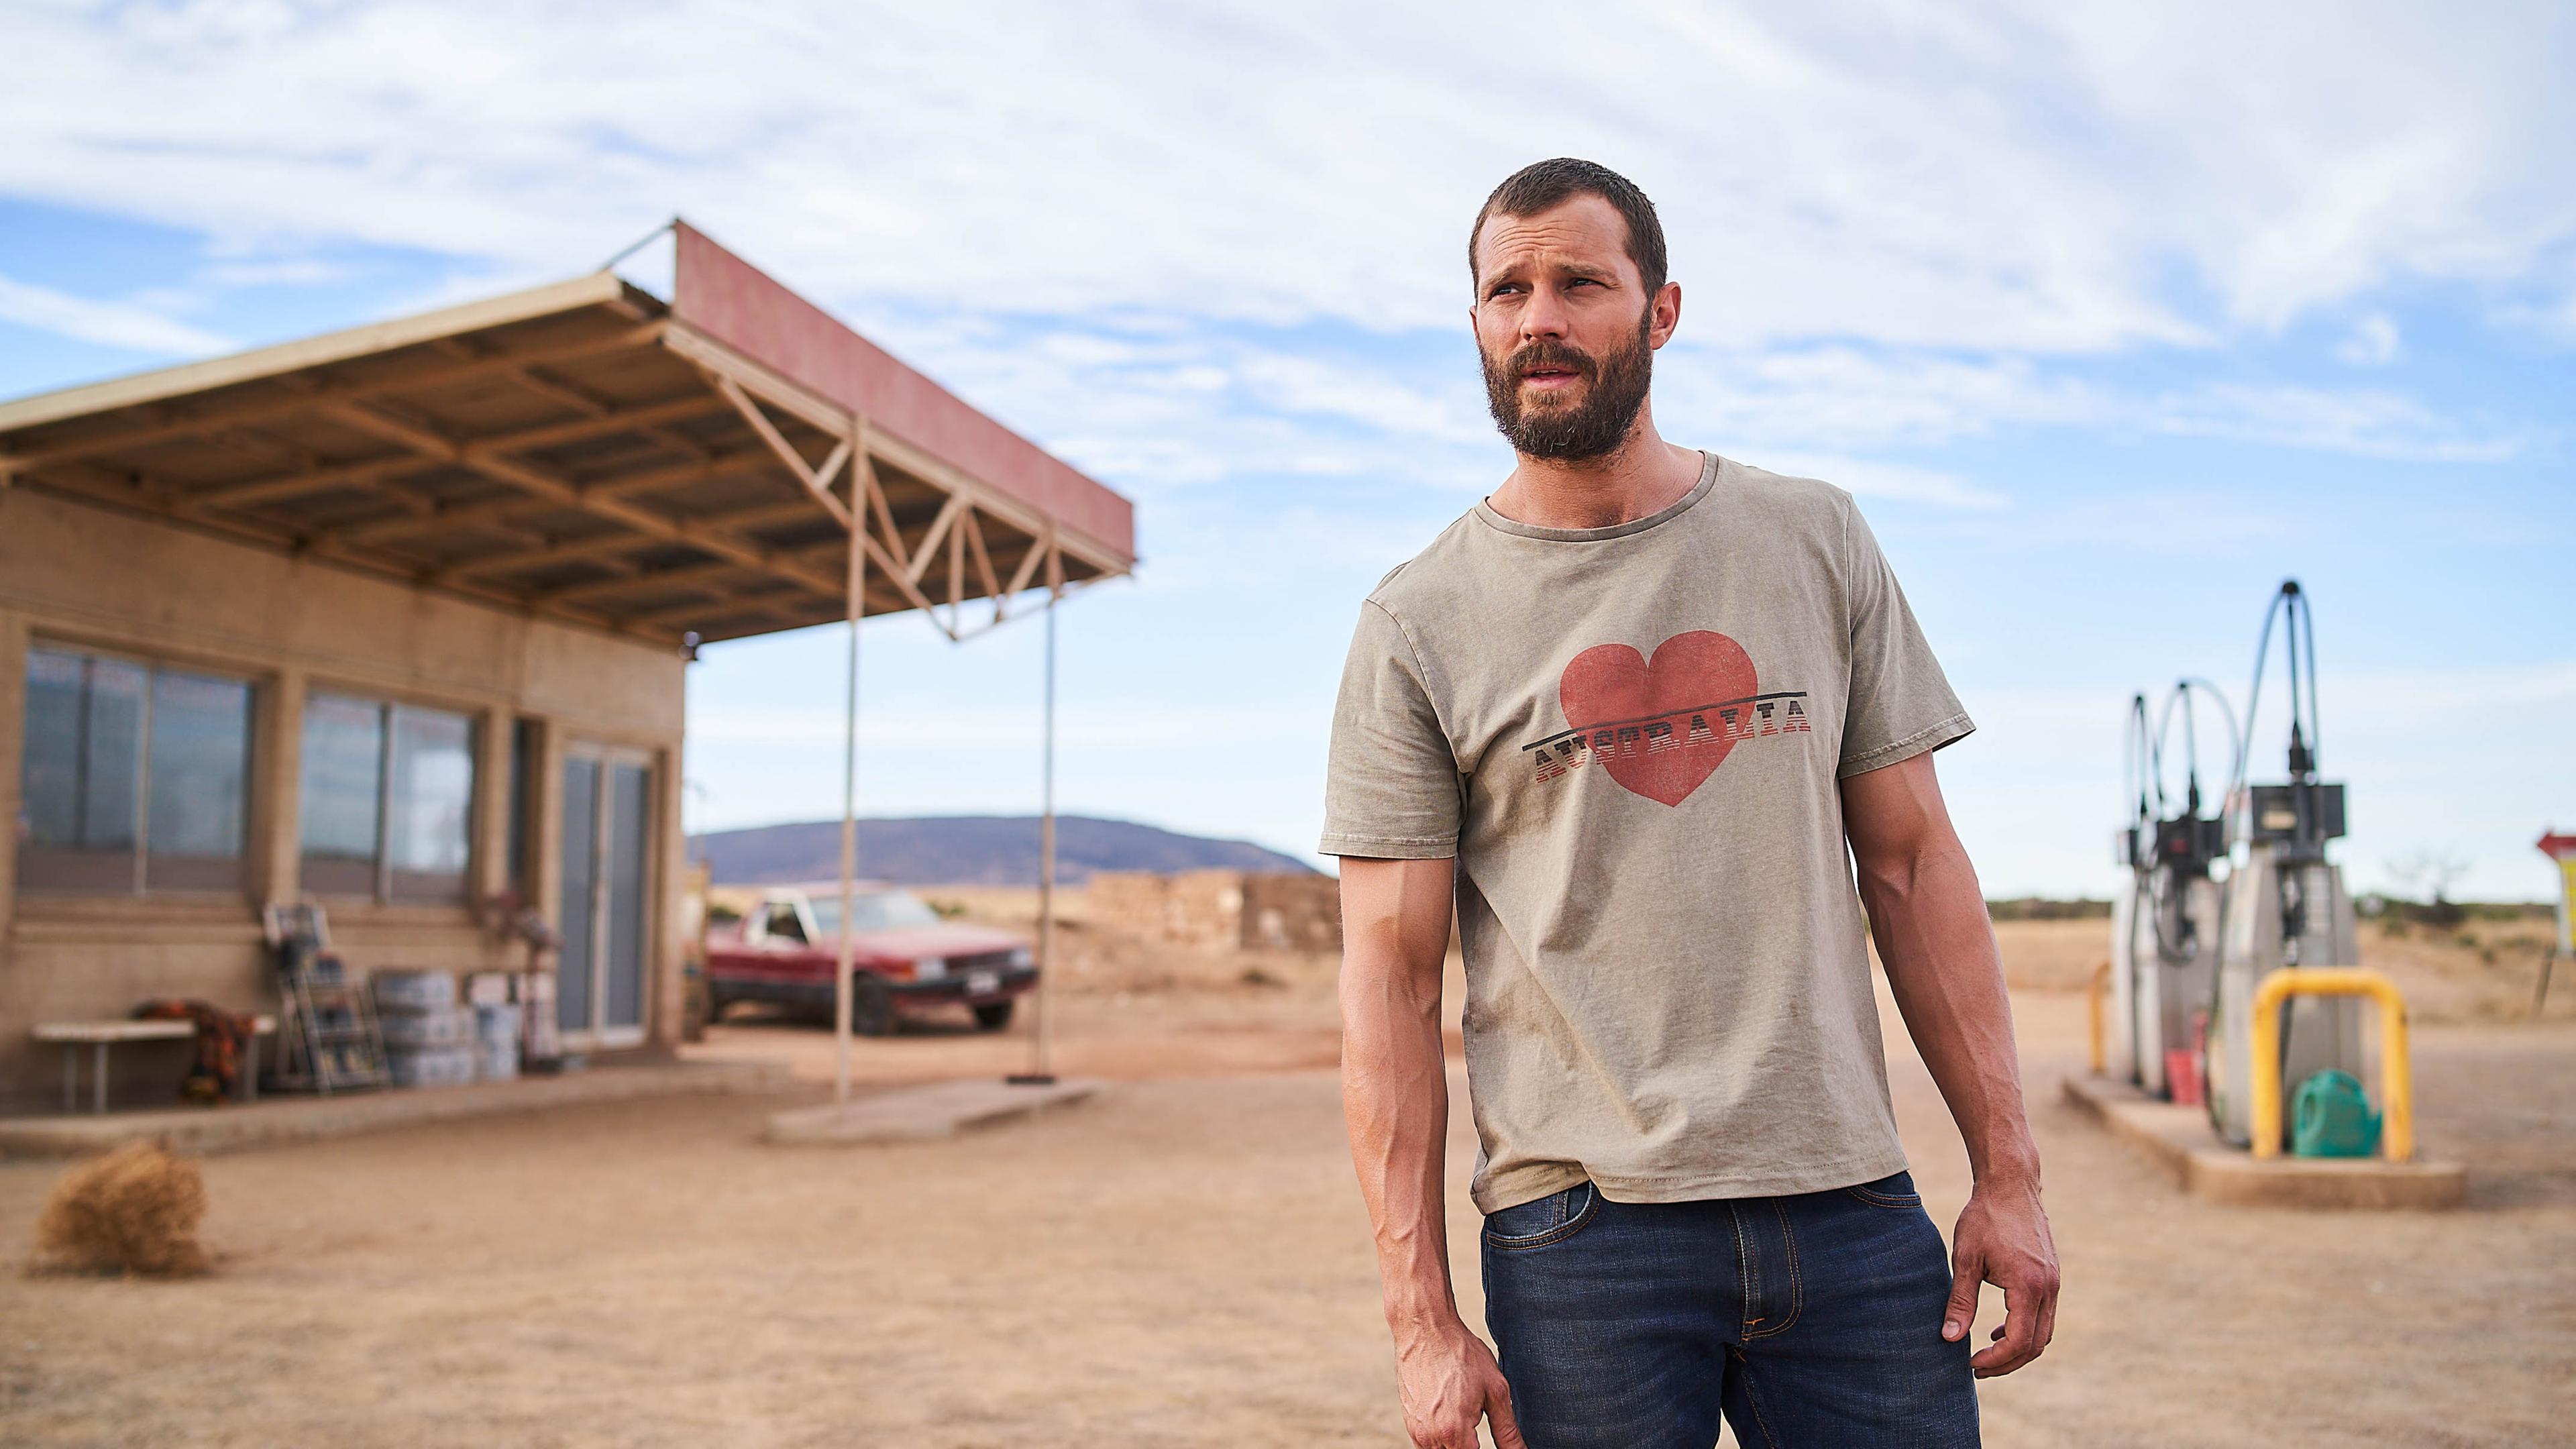 "The Tourist - Duell im Outback": Der Fremde (Jamie Dornan) steht breitbeinig und mit leicht verwirrtem Gesichtsausdruck auf dem Gelände einer kleinen Tankstelle im Outback. Er trägt eine Jeans und ein T-Shirt mit einem roten Herz und dem Schriftzug "Australia".